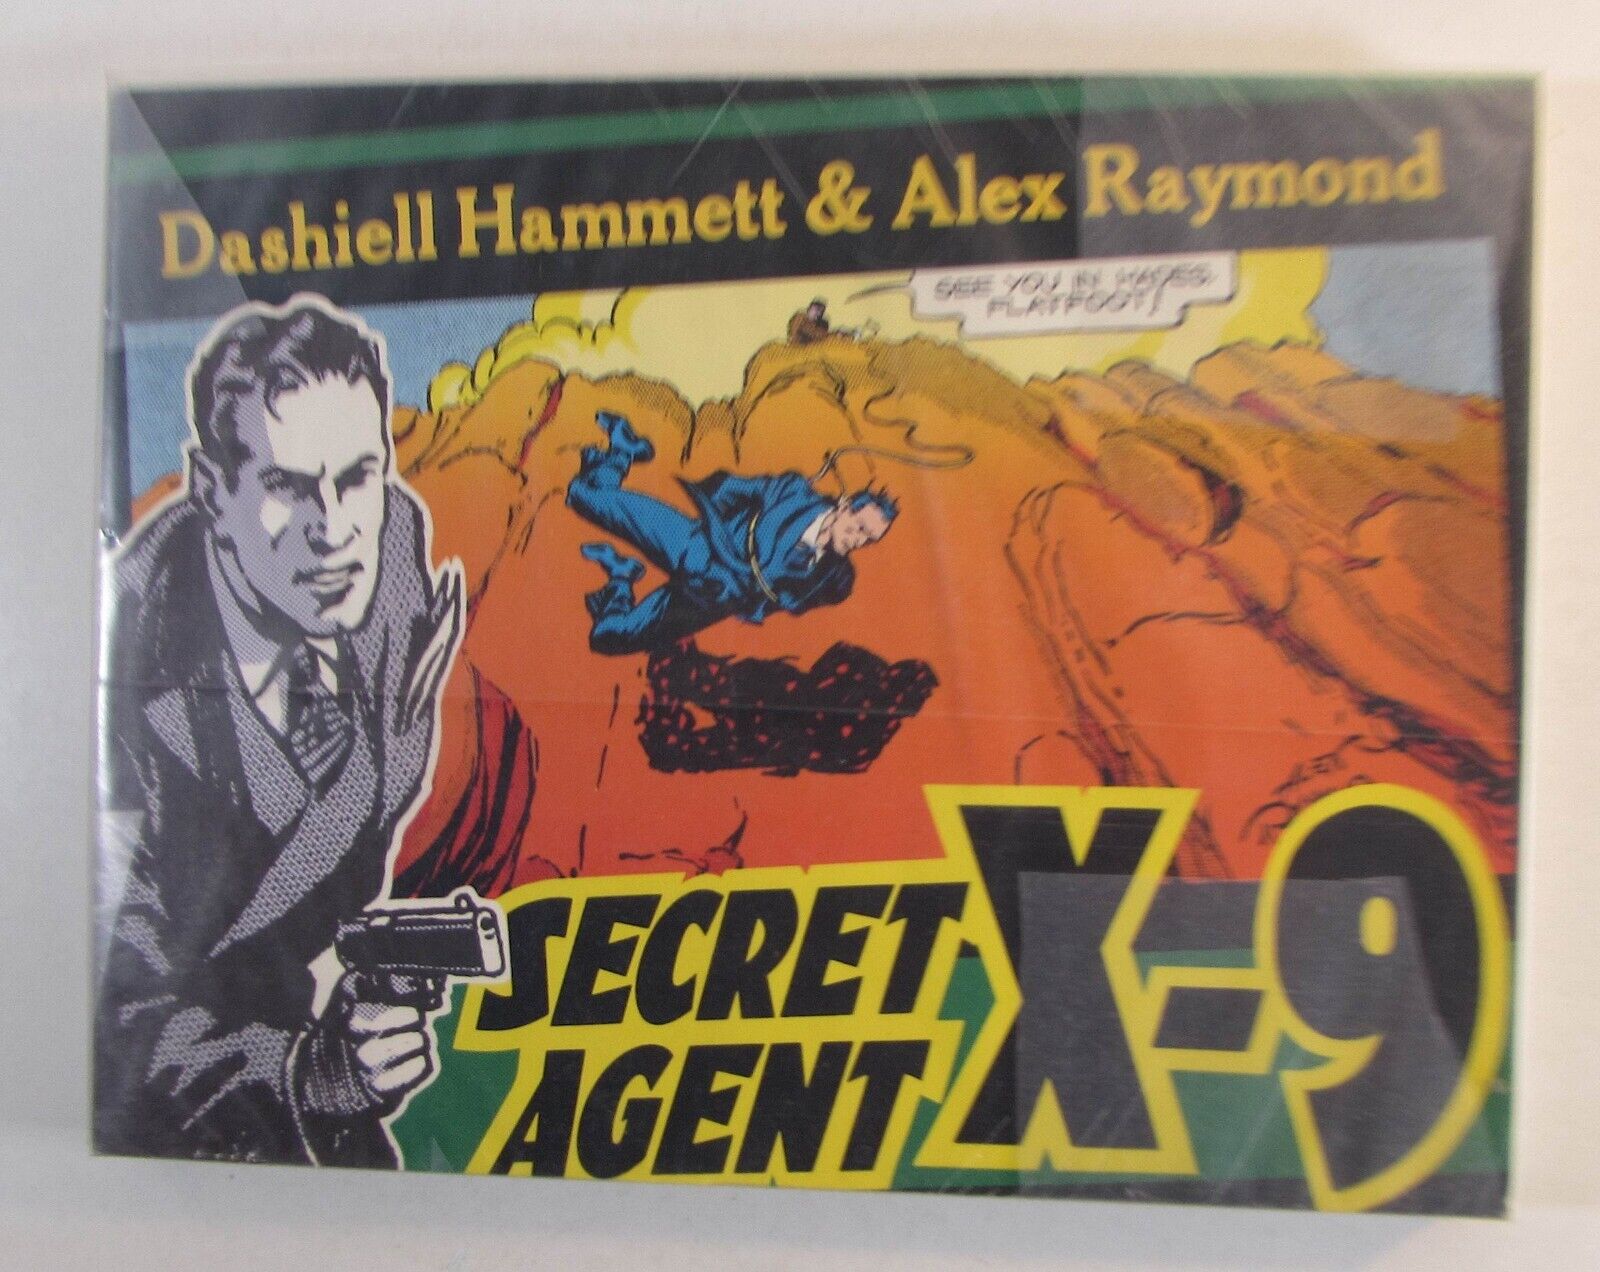 SECRET AGENT X-9 TPB Dashiell Hammett & Alex Raymond (1990, Kitchen Sink Press)